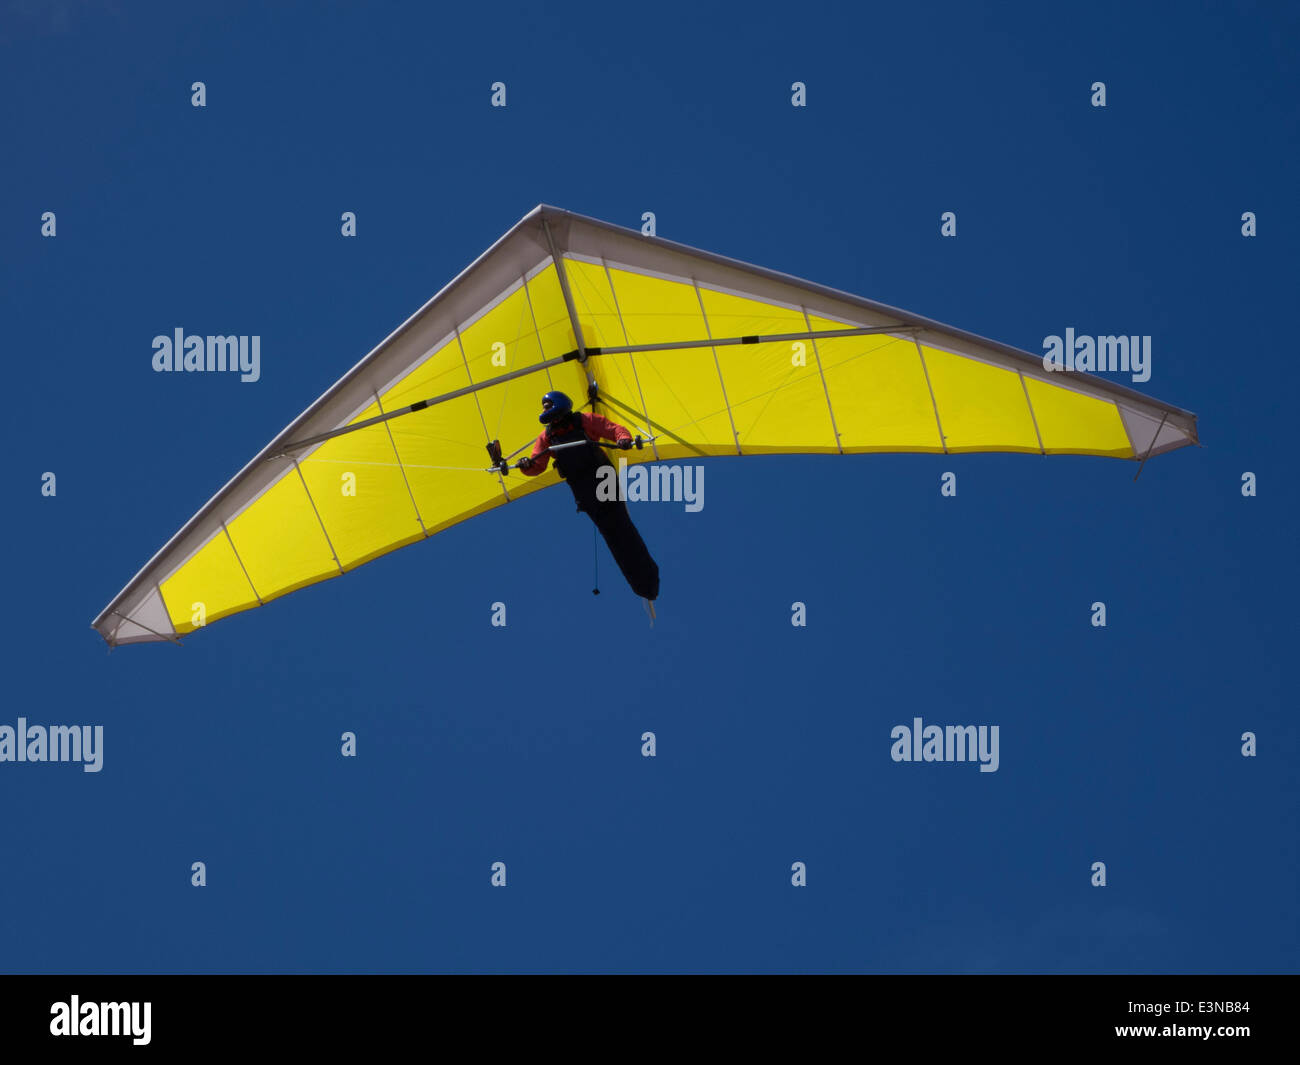 Basso angolo vista di una persona in deltaplano contro il cielo blu chiaro Foto Stock